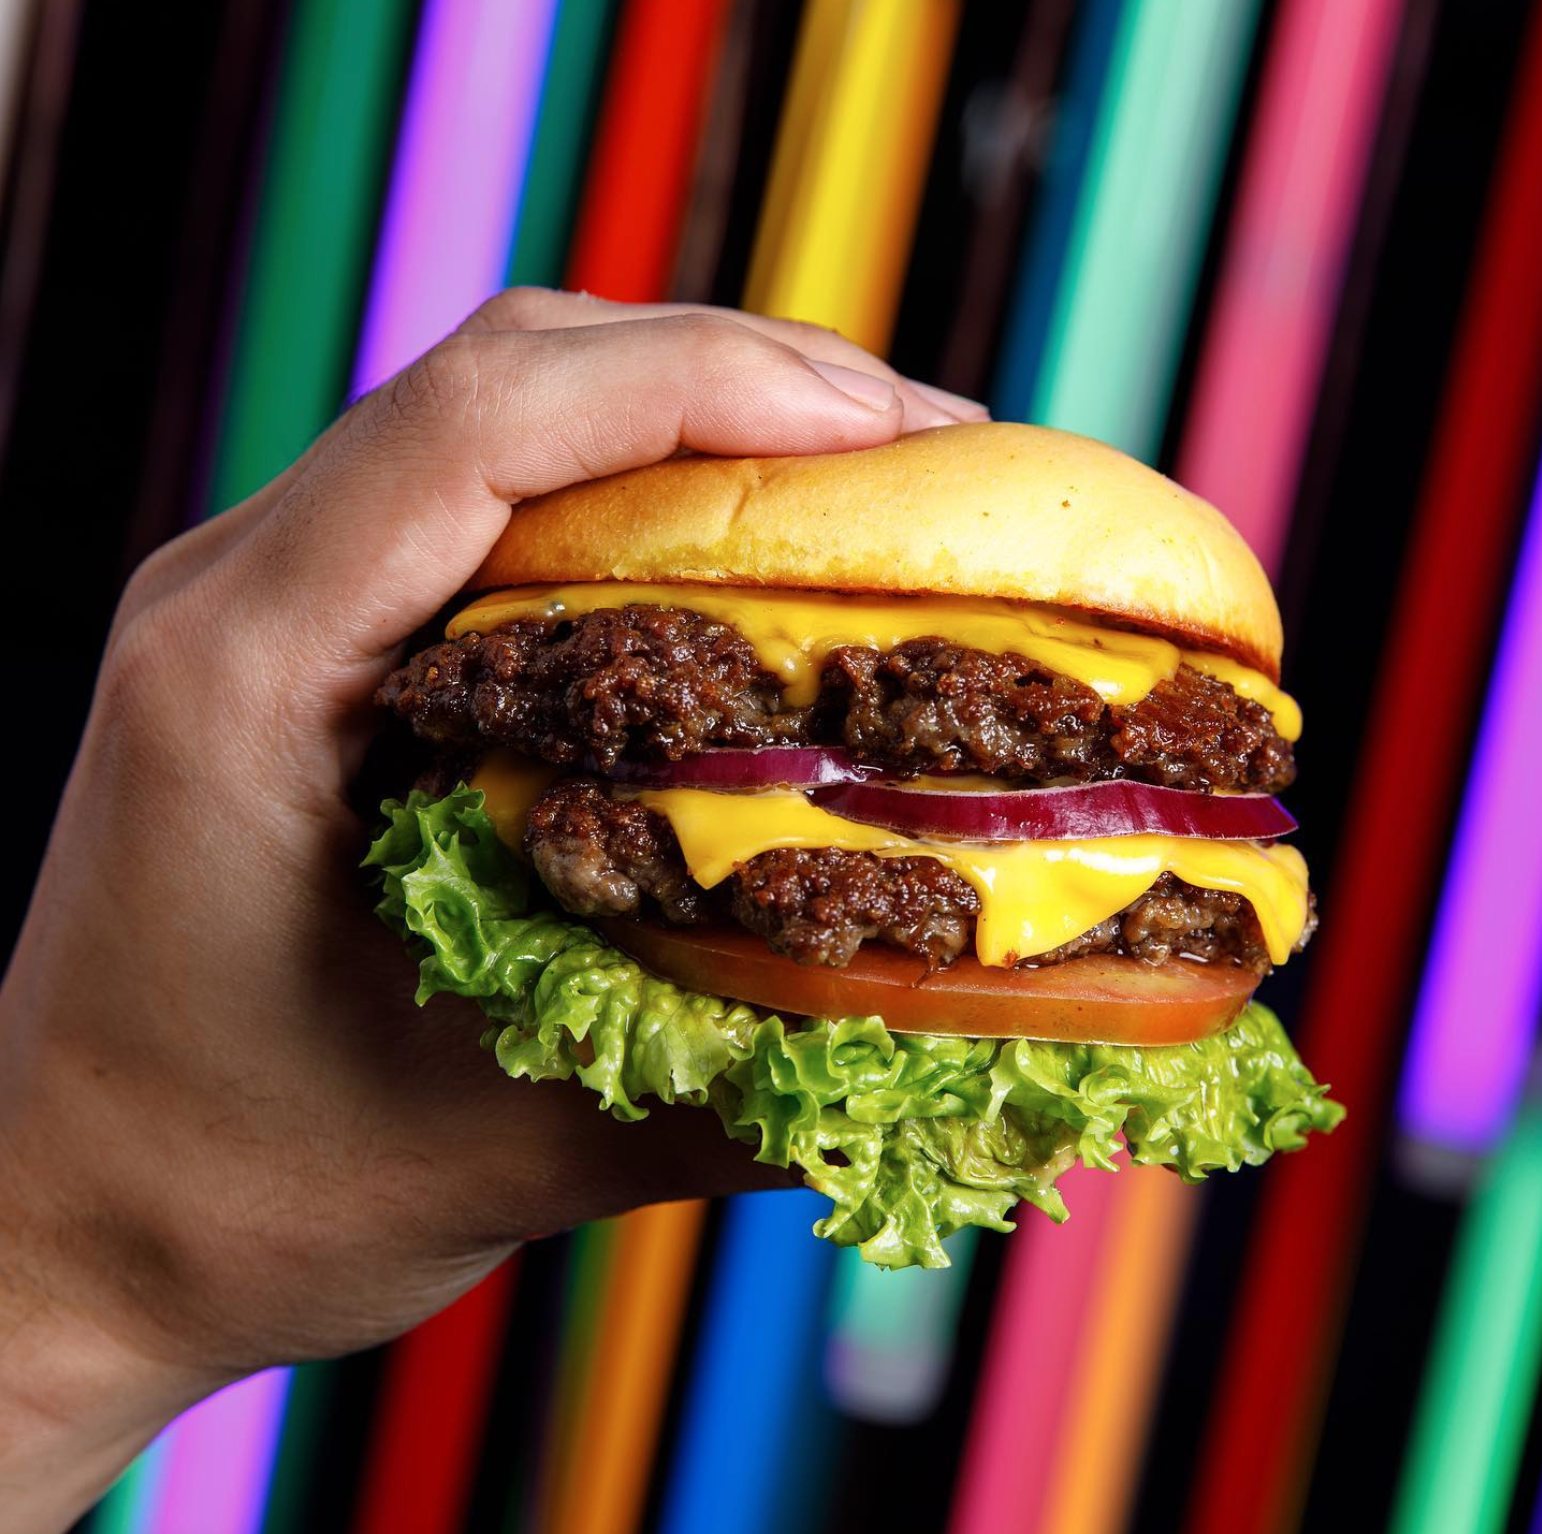 Su oferta gastronómica se complementa con una temática gamer y un blend de carne que convierten a sus hamburguesas en unas de las mejores de la ciudad